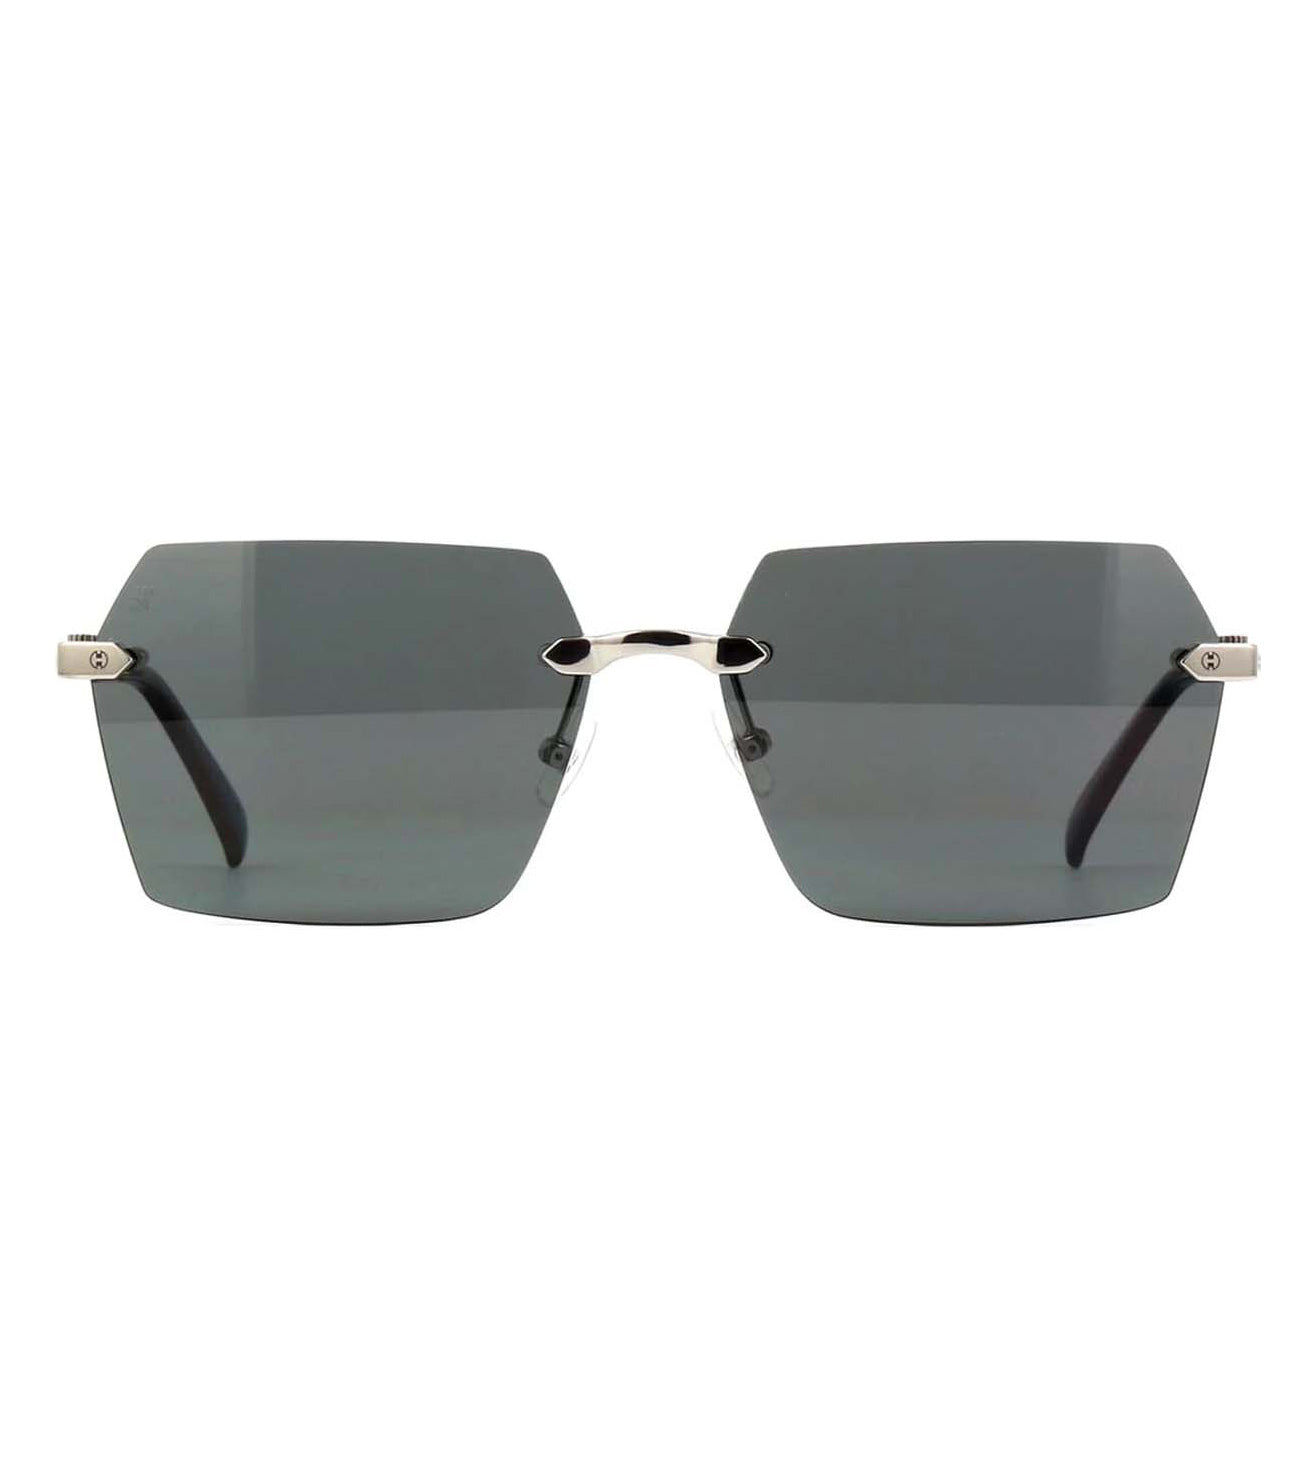 Hublot Unisex Grey Square Sunglasses